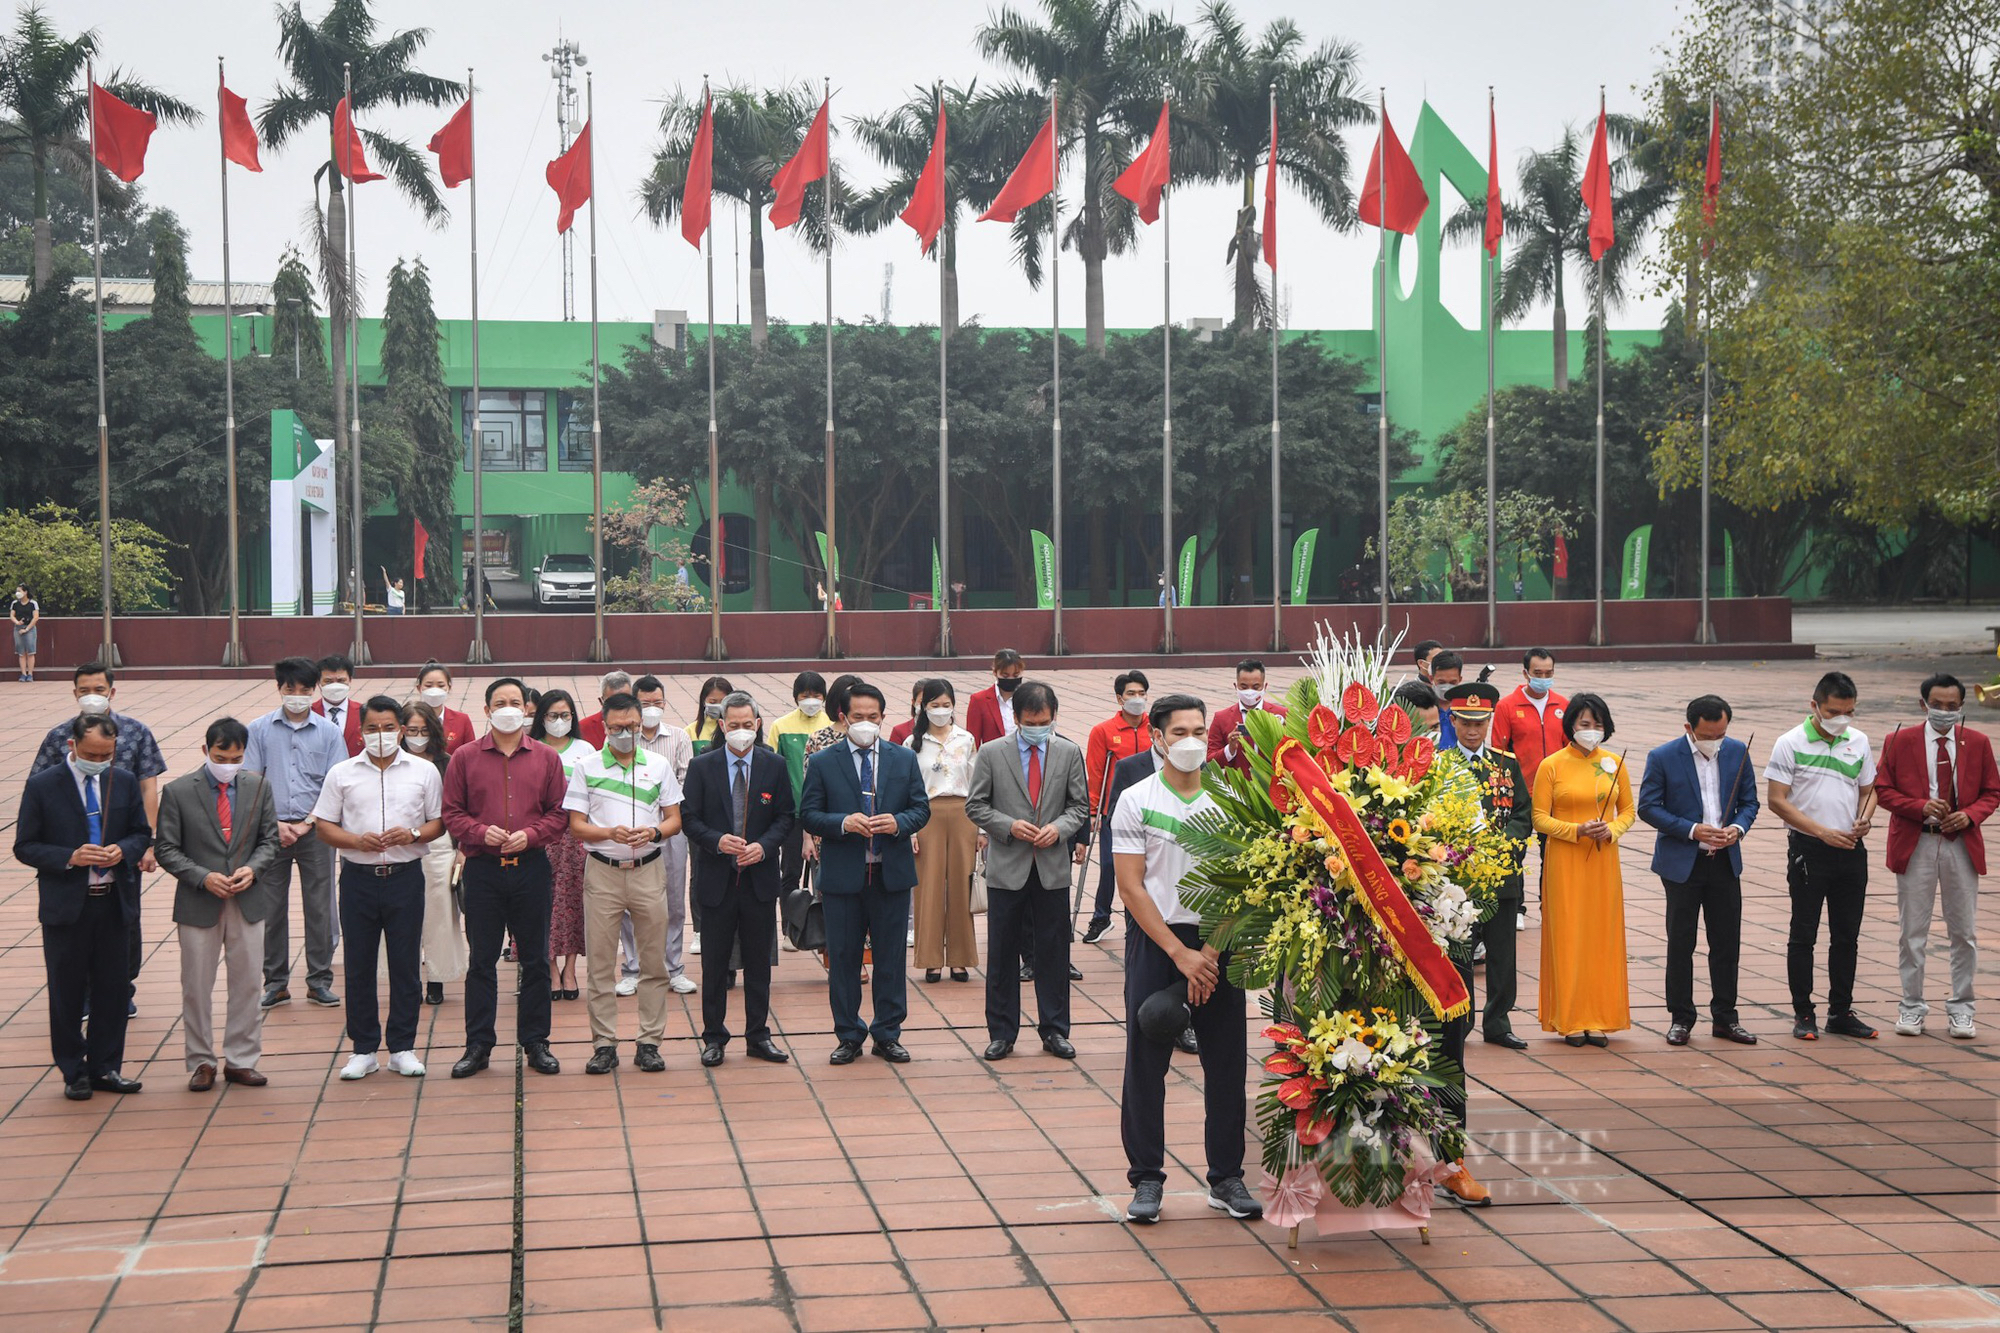 HLV Park Hang-seo và Quang Hải vắng mặt ở Lễ vinh danh của Thể thao Việt Nam - Ảnh 5.